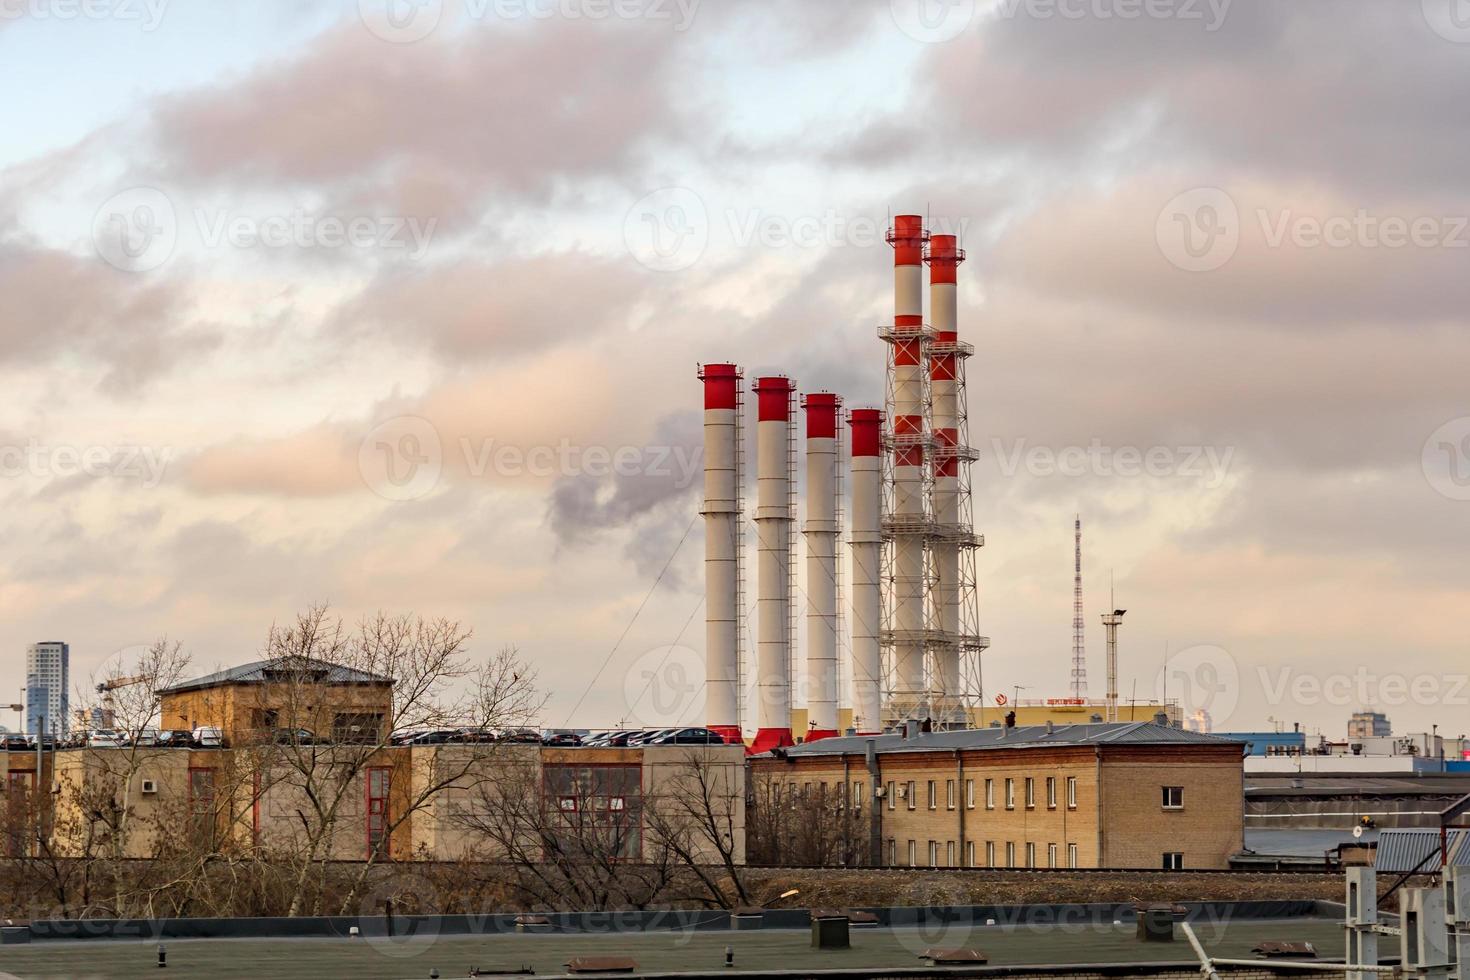 vista de la ciudad industrial - viejas pilas de humo rojo y blanco en el fondo del cielo al atardecer foto